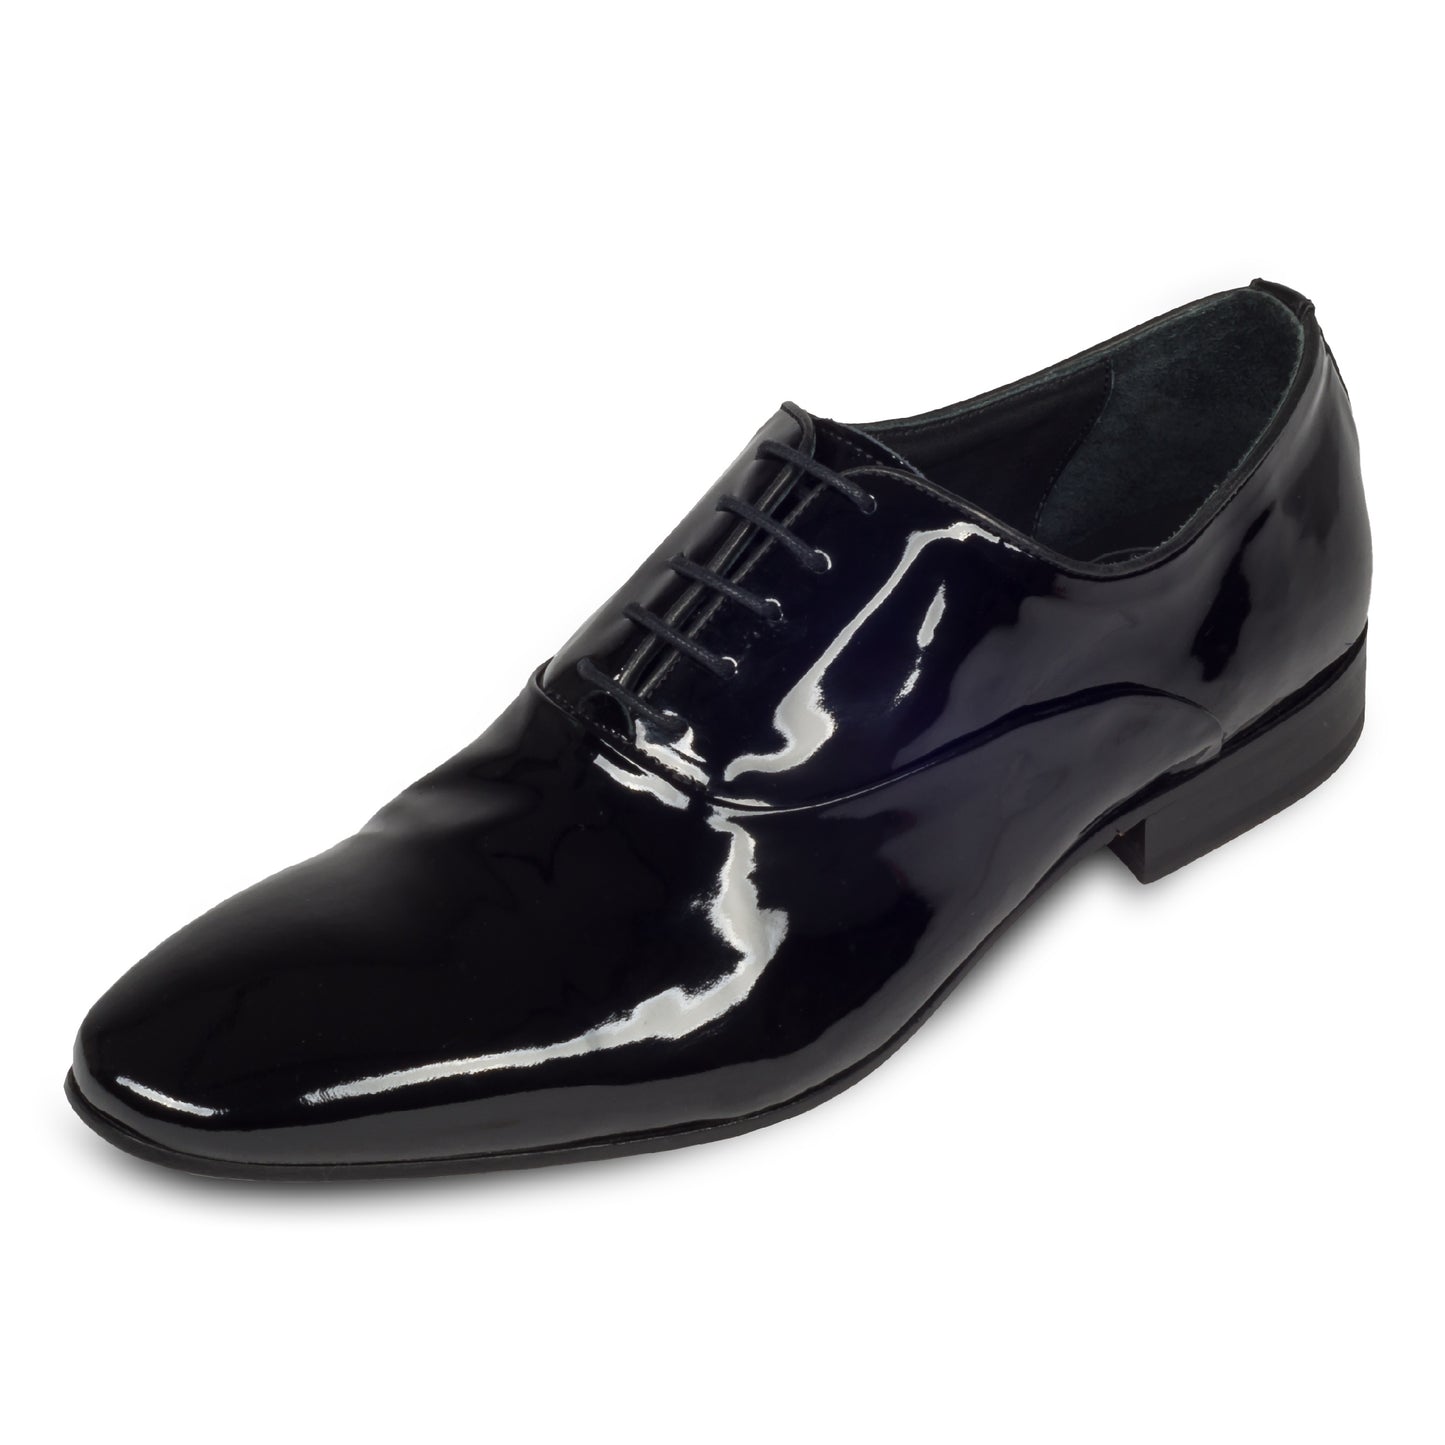 Pawelks - Italienische Herren Anzugschuhe, Lackschuhe Oxford in schwarz. Aus Kalbsleder handgefertigt. Schräge Ansicht linker Schuh.